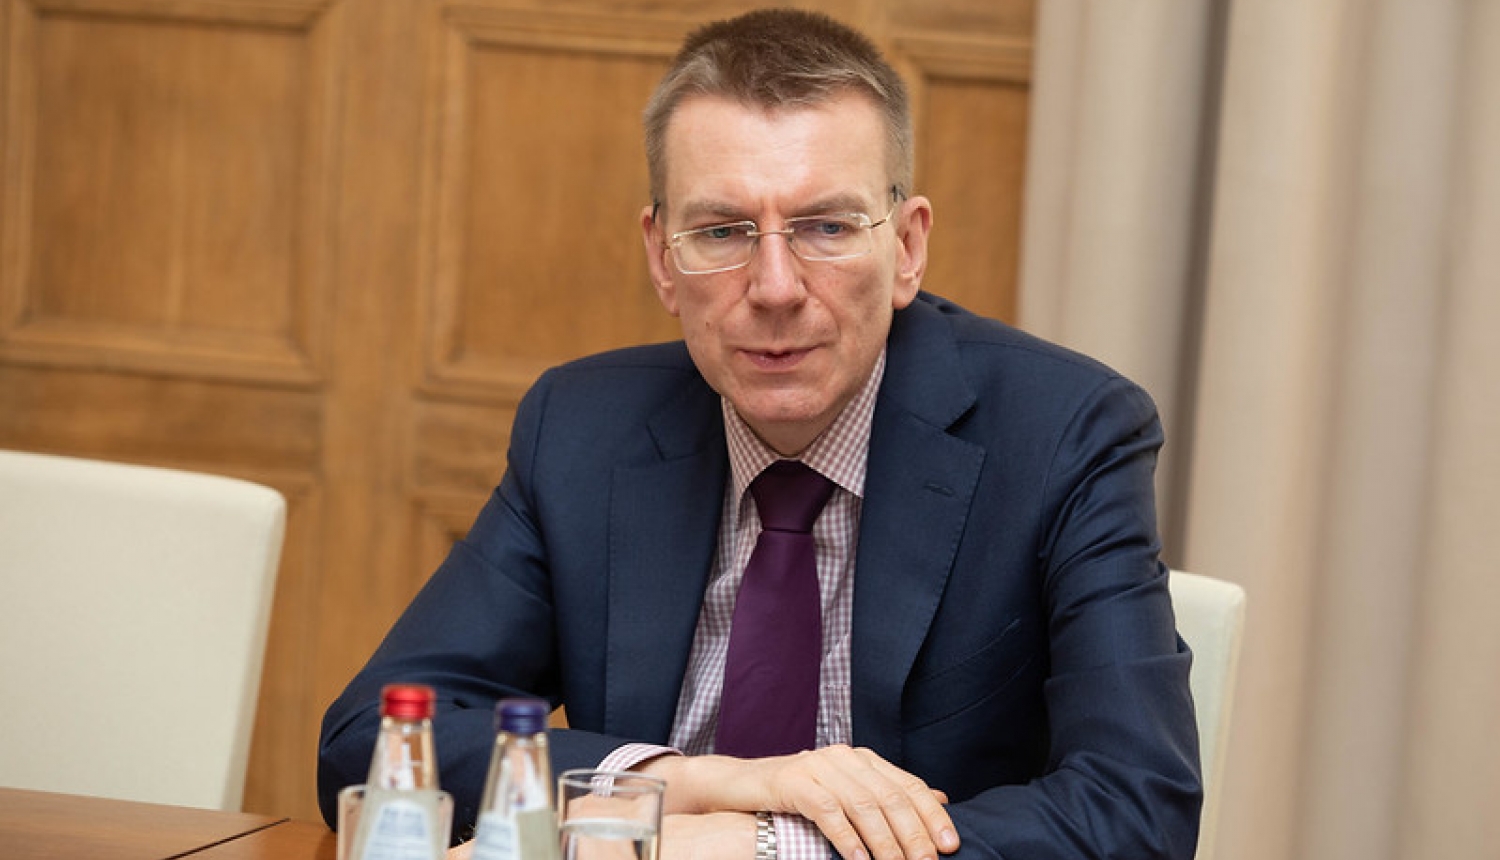 Ārlietu ministrs: Latvijai nav pieņemams piedāvātais kohēzijas finansējuma samazinājums